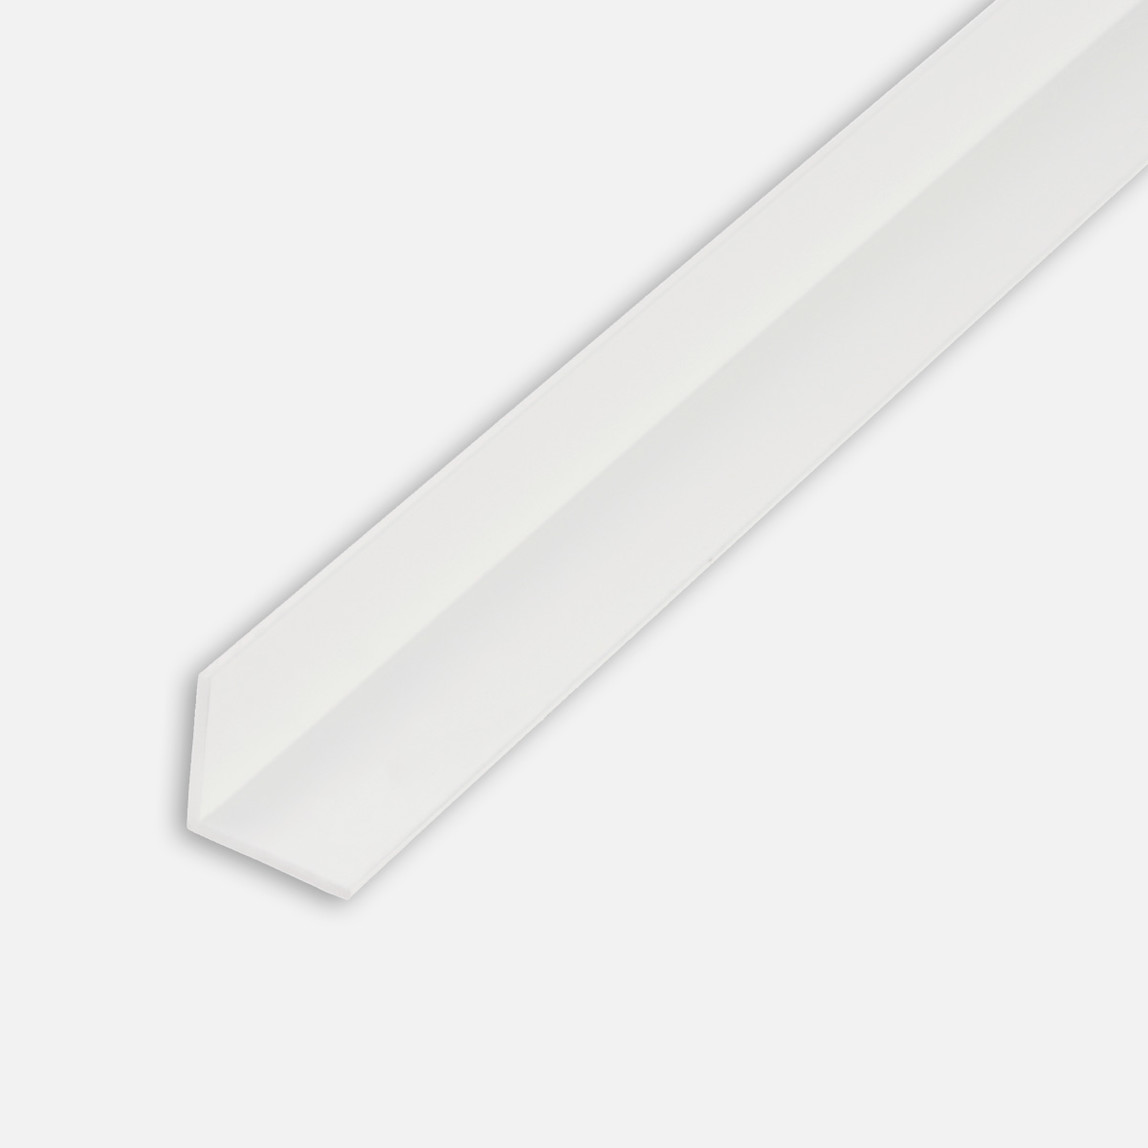    Kantoflex Açılı Profil Beyaz 